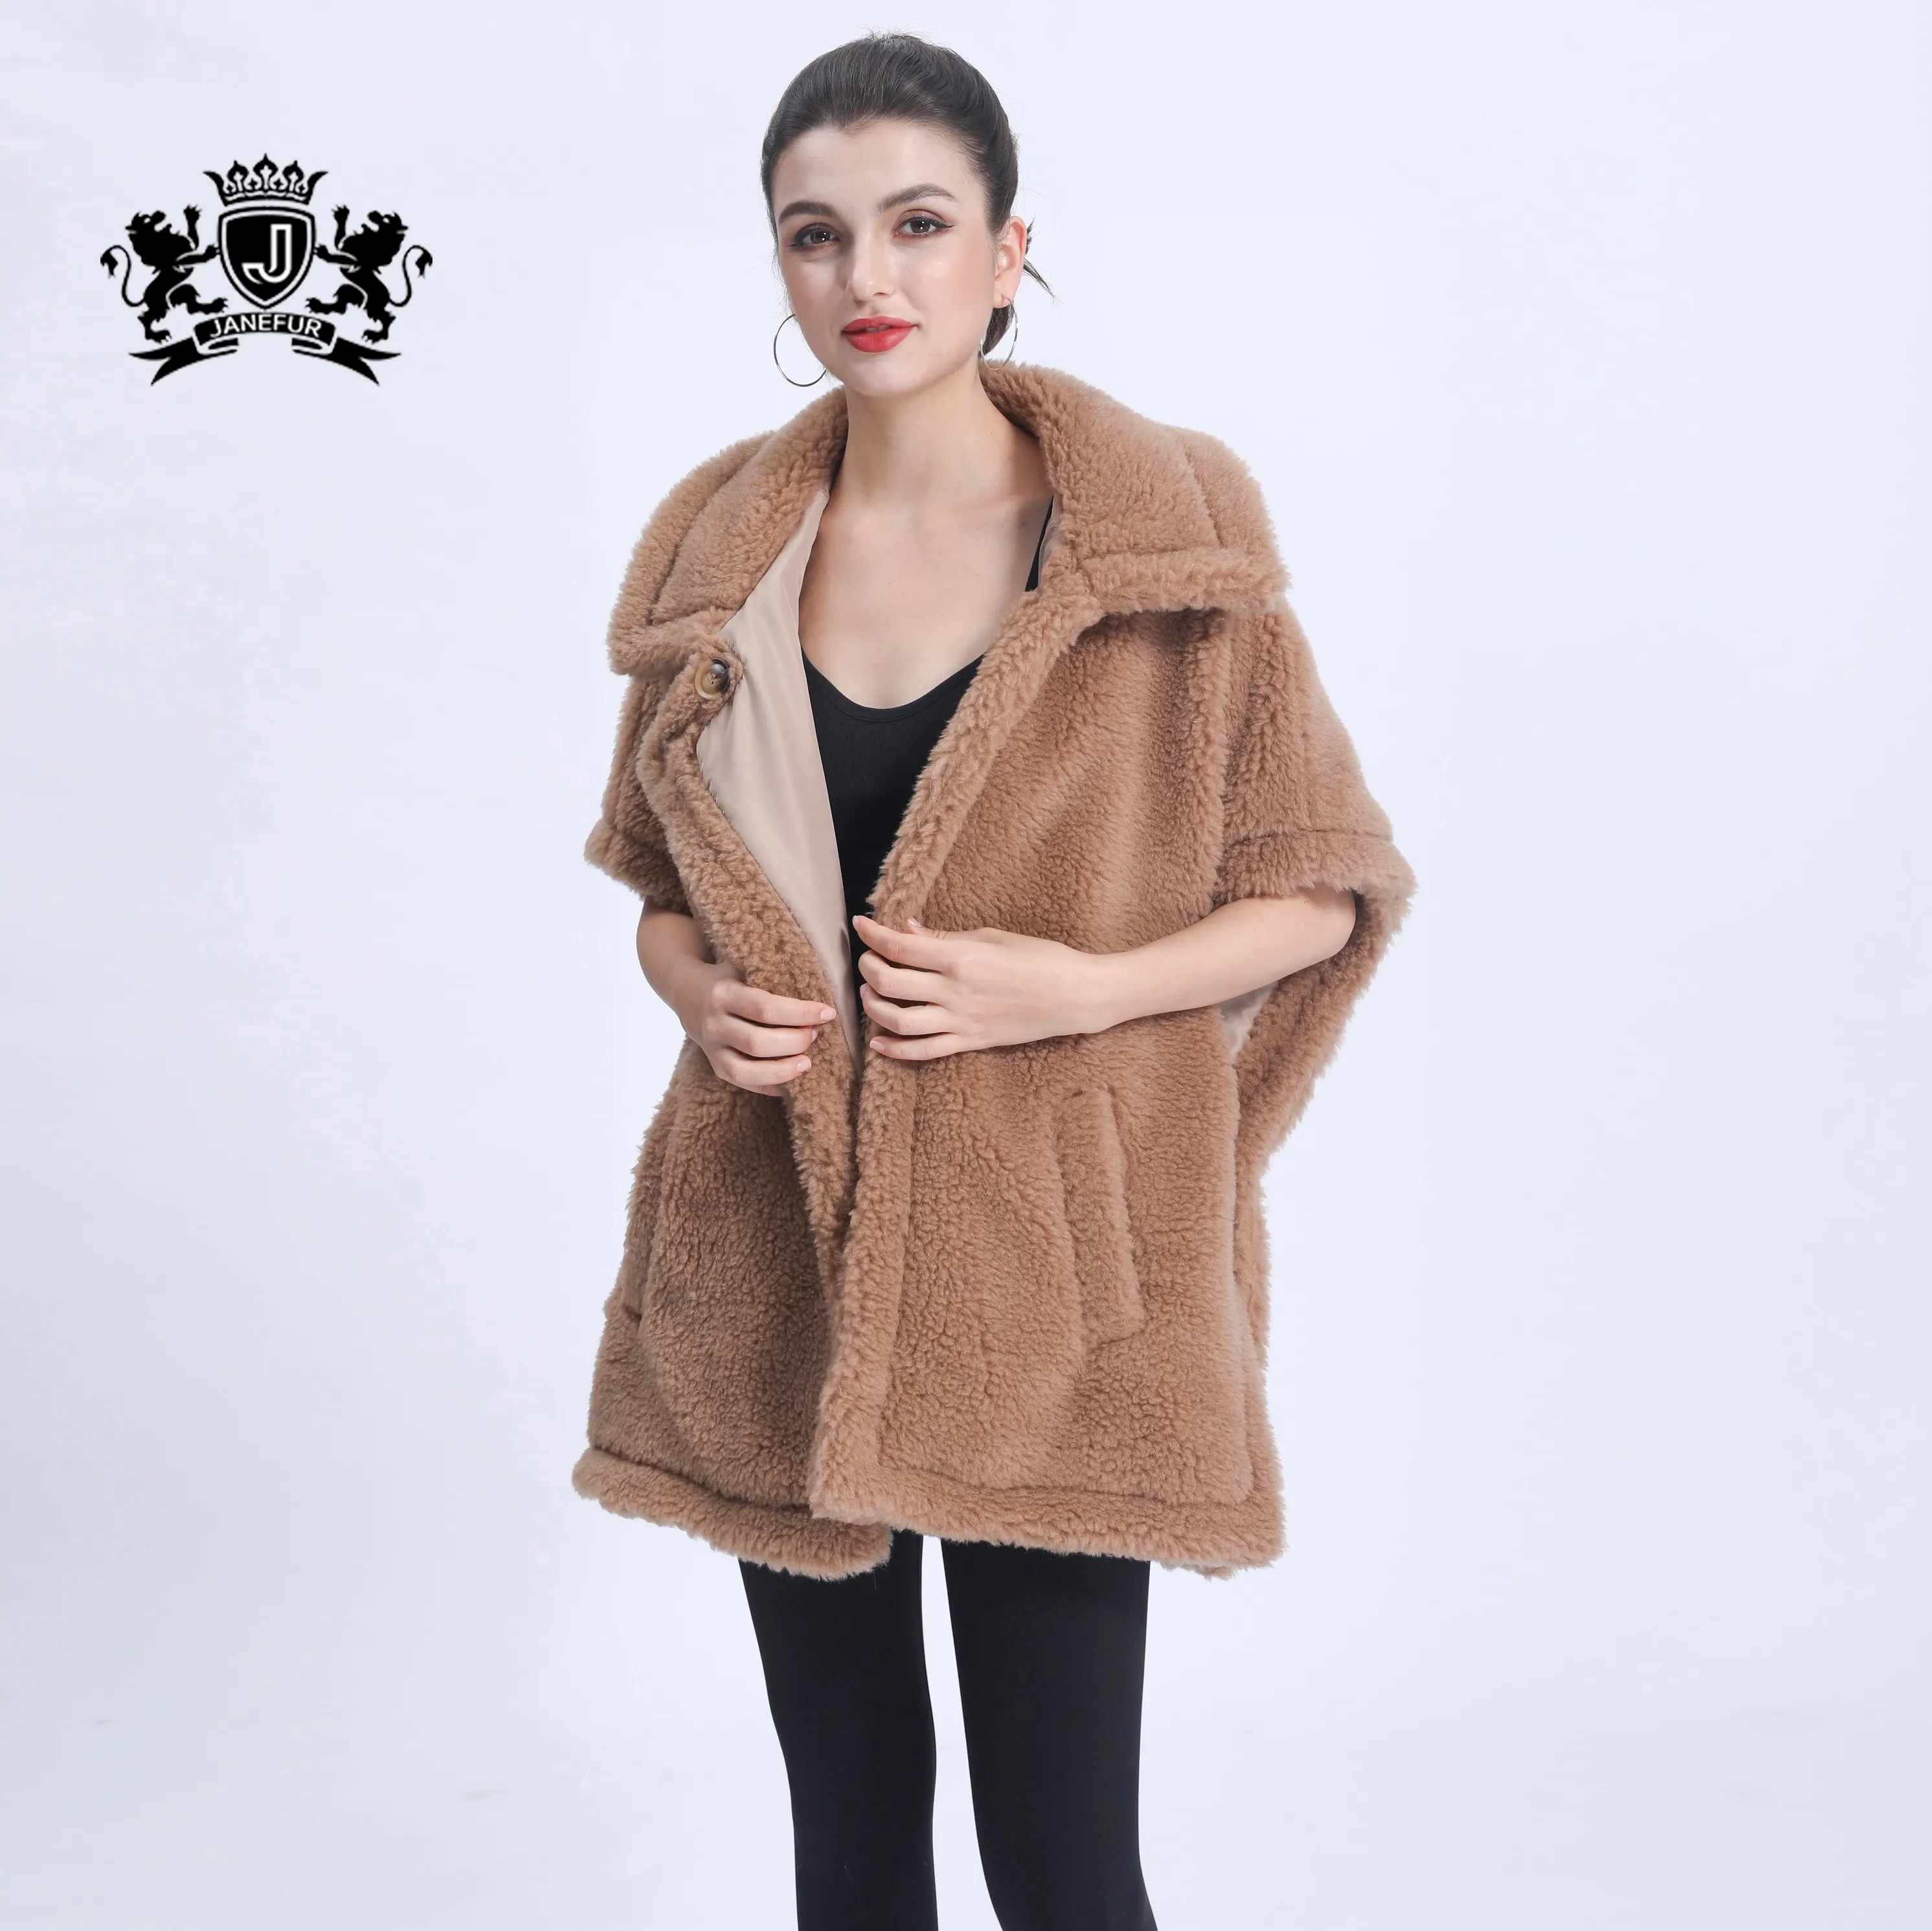 Kadın bayanlar sıcak panço tarzı kısa oyuncak ceket moda tasarım yüksek kaliteli kare yaka Trendy koyun derisi oyuncak ceket